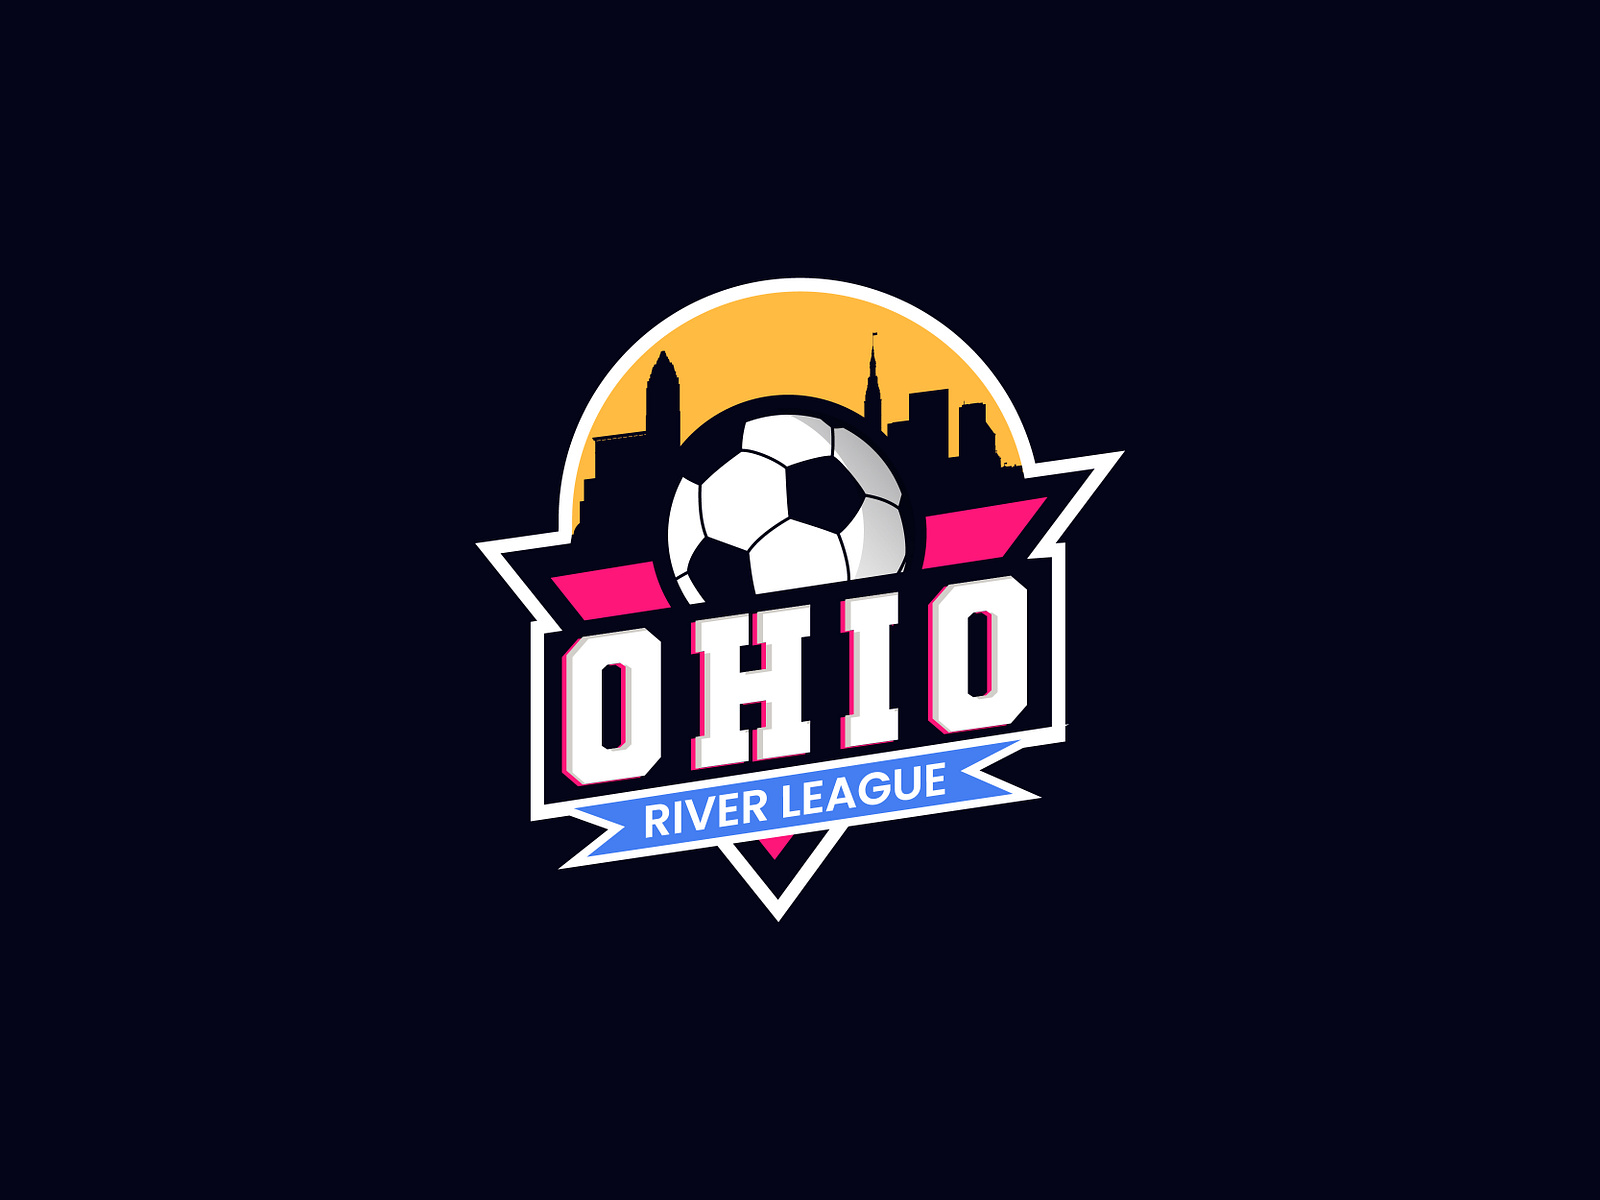 Ohio Soccer League by SafiUllah baig on Dribbble